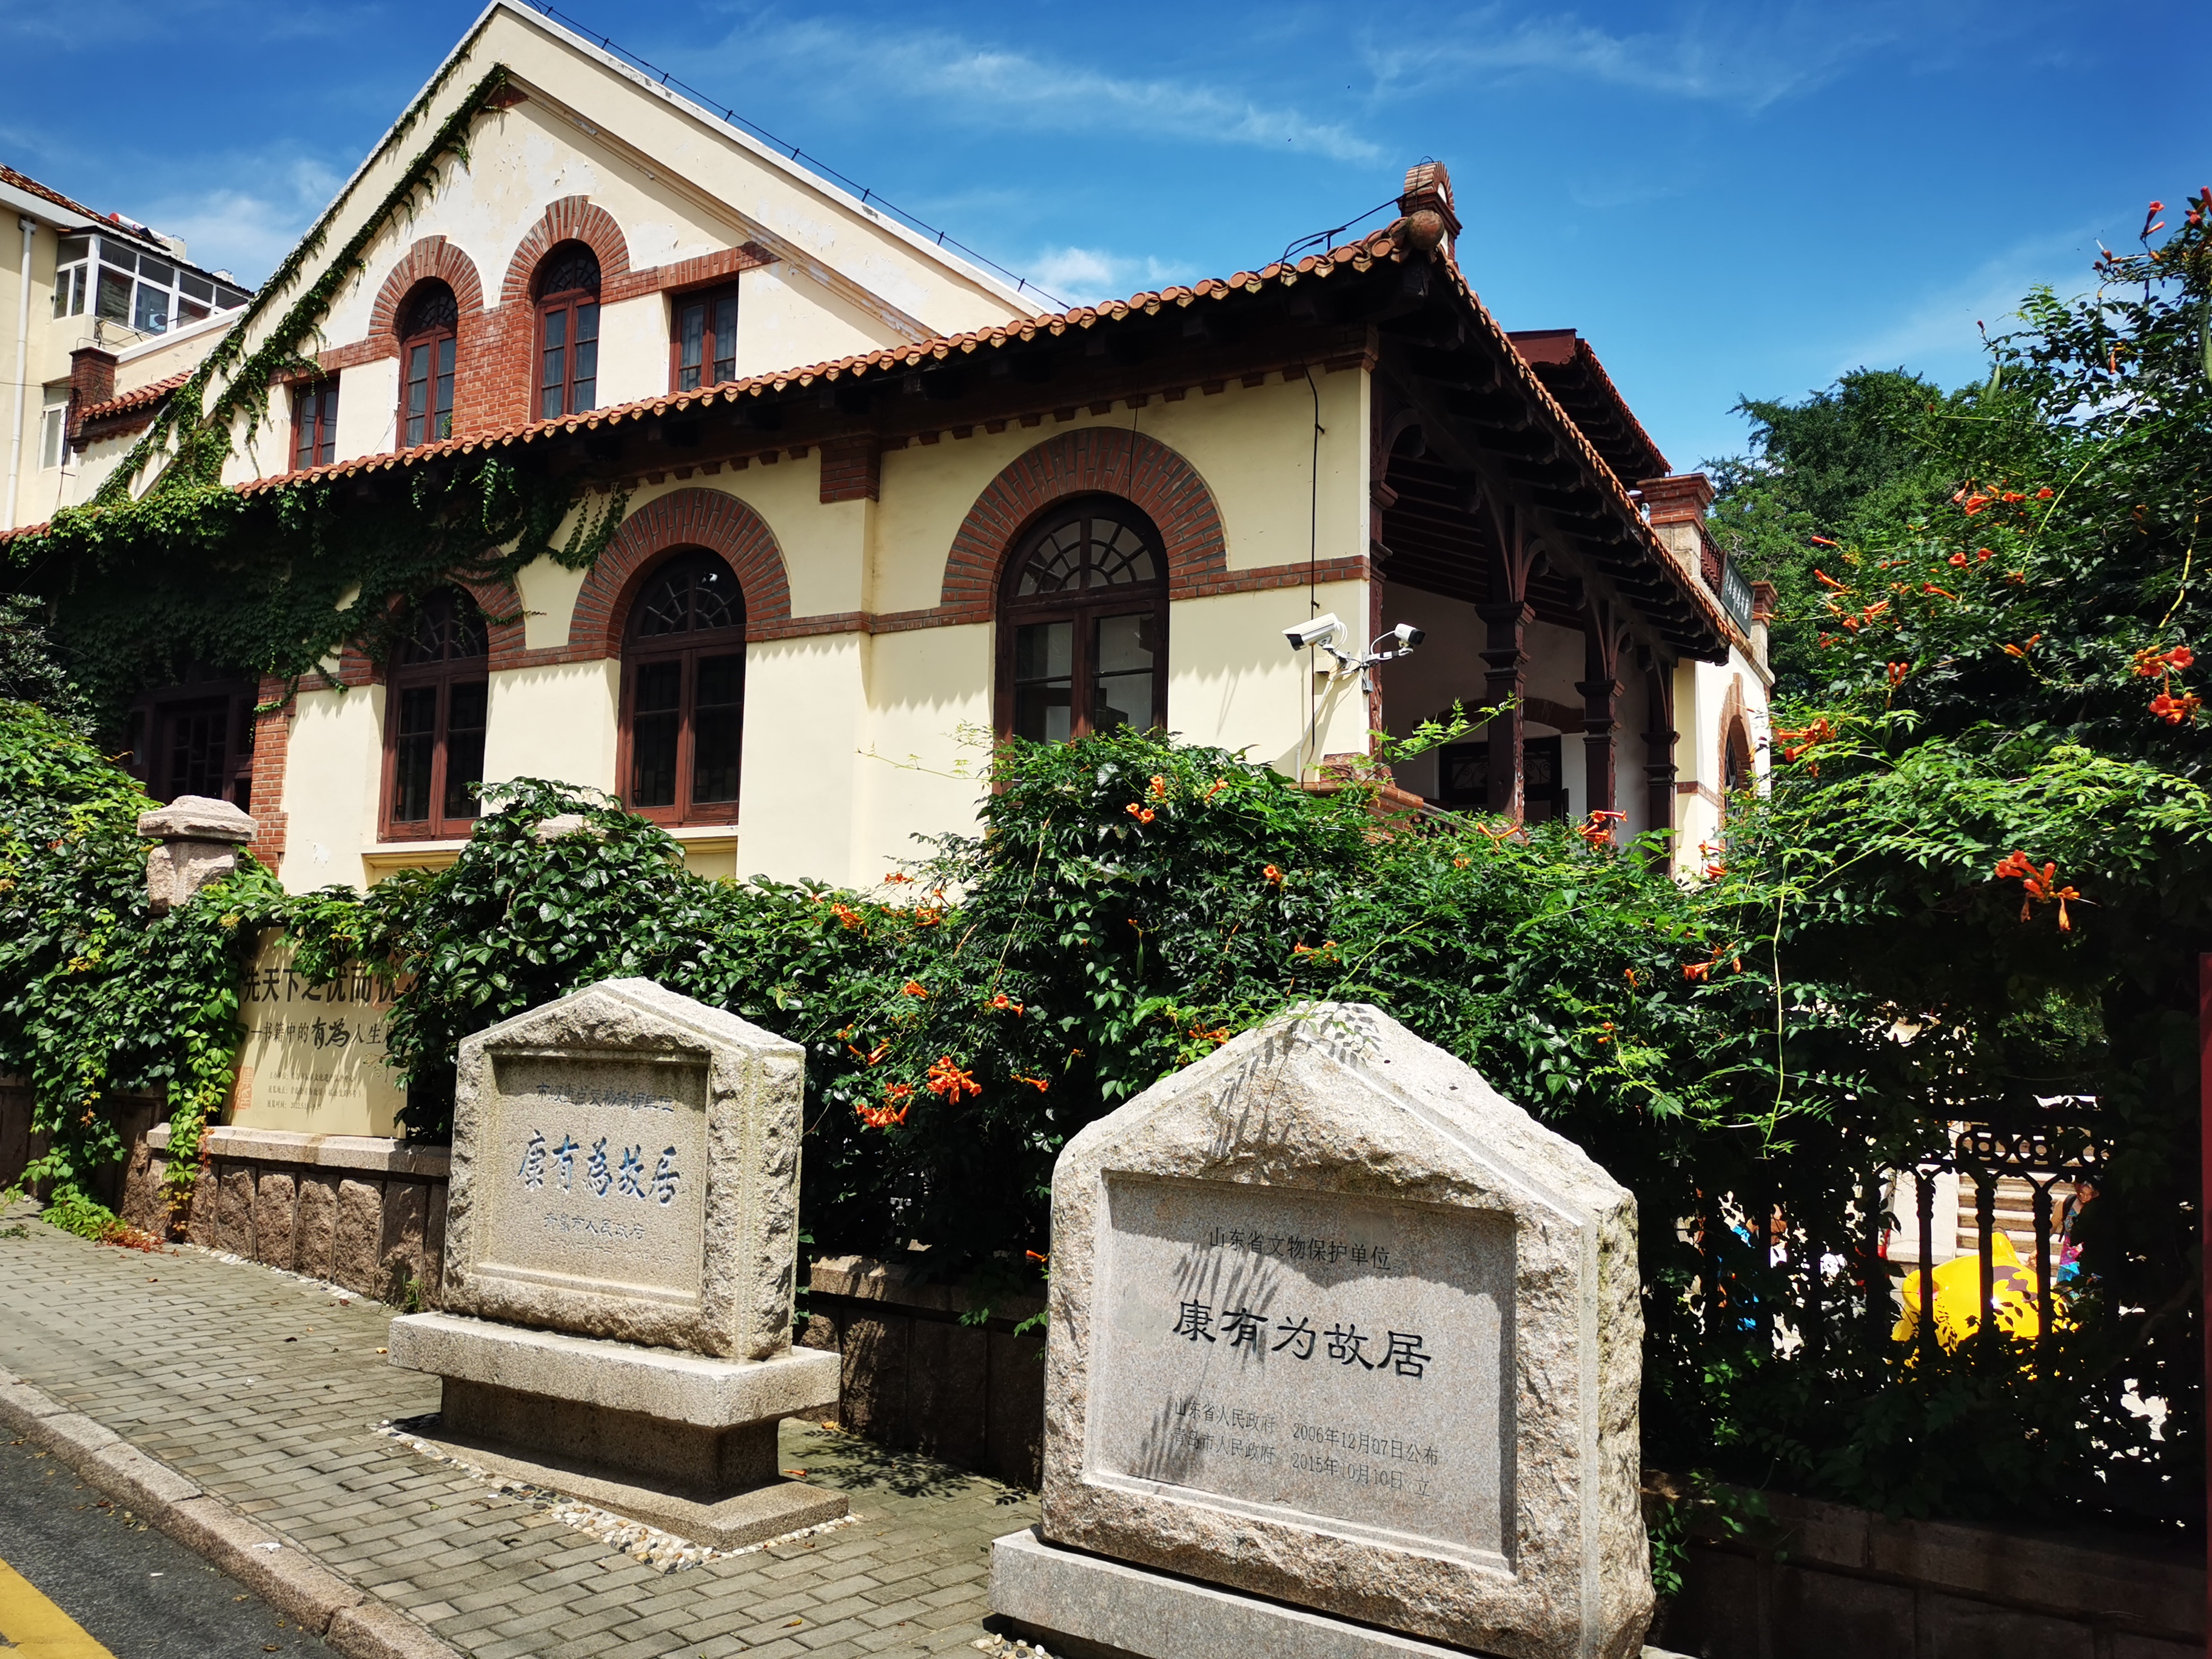 青岛最美的名人故居,康有为故居,是青岛最早的德式建筑之一